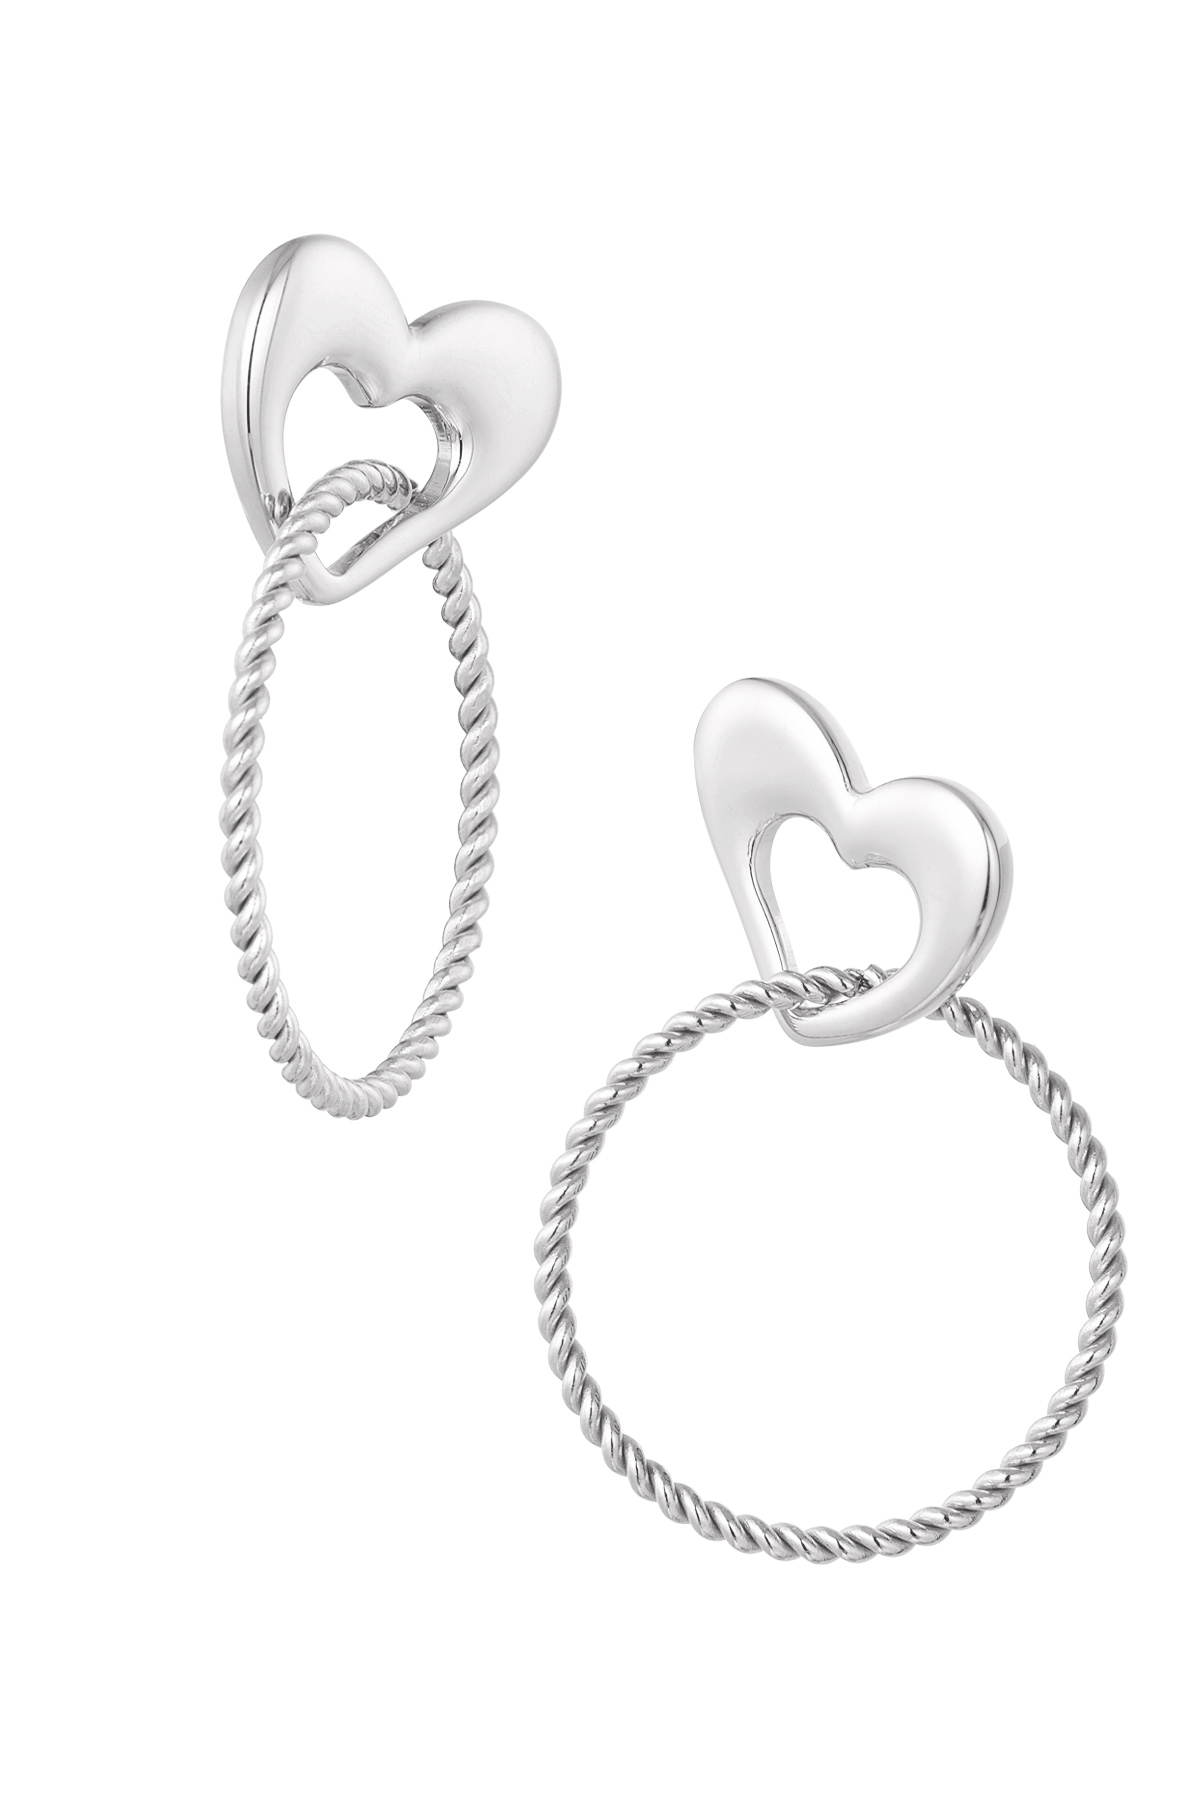 Ohrringe Herz mit Ring - Silber